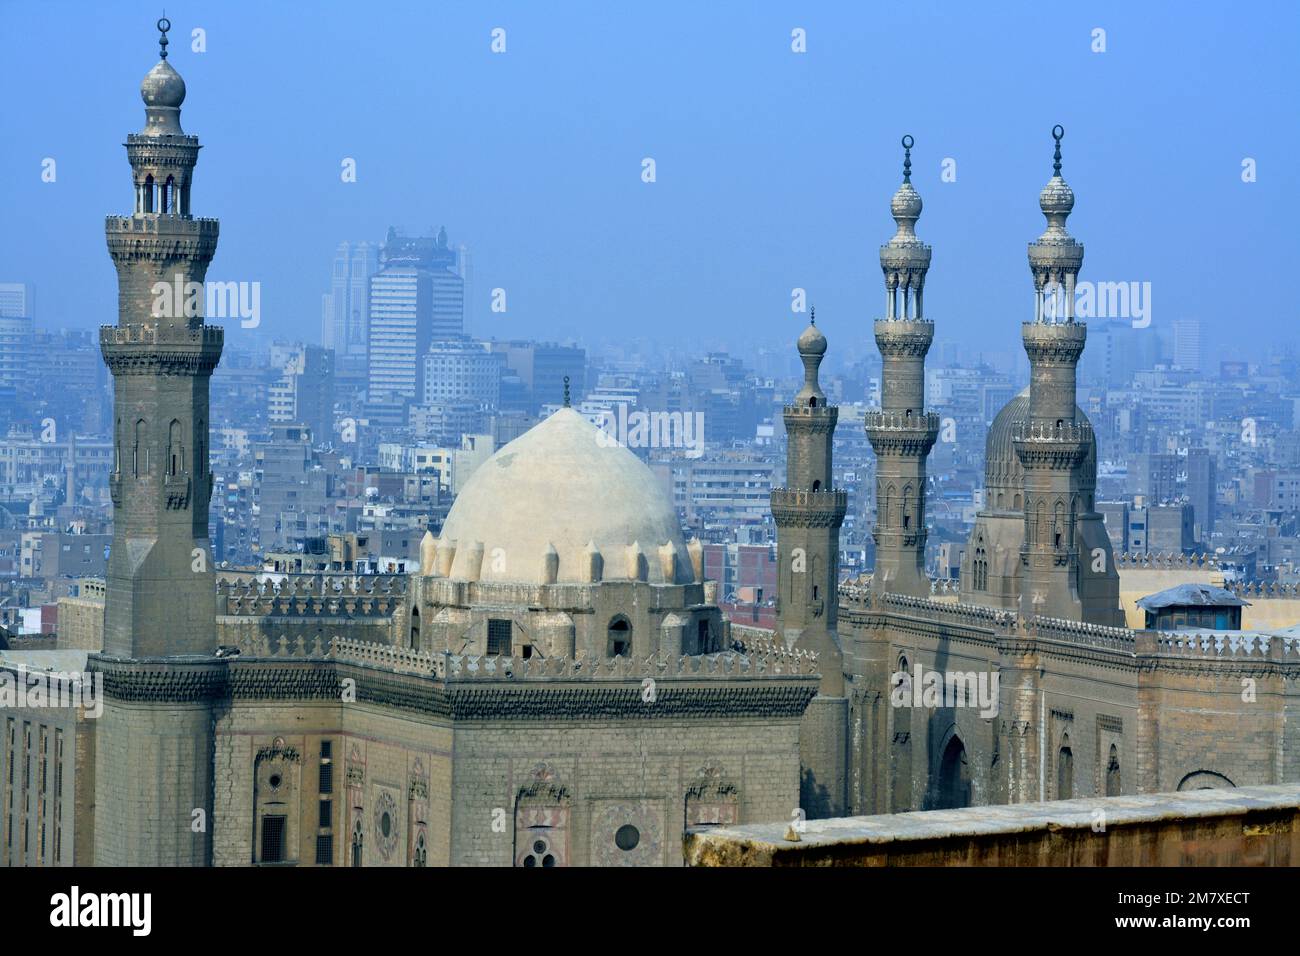 Le Caire, l'Egypte, 7 janvier 2023: Les mosquées du Sultan Hassan et d'Al Rifa'i dans l'ancienne place de la Citadelle du Caire, les mosquées islamiques très célèbres en Egypte et très clos Banque D'Images